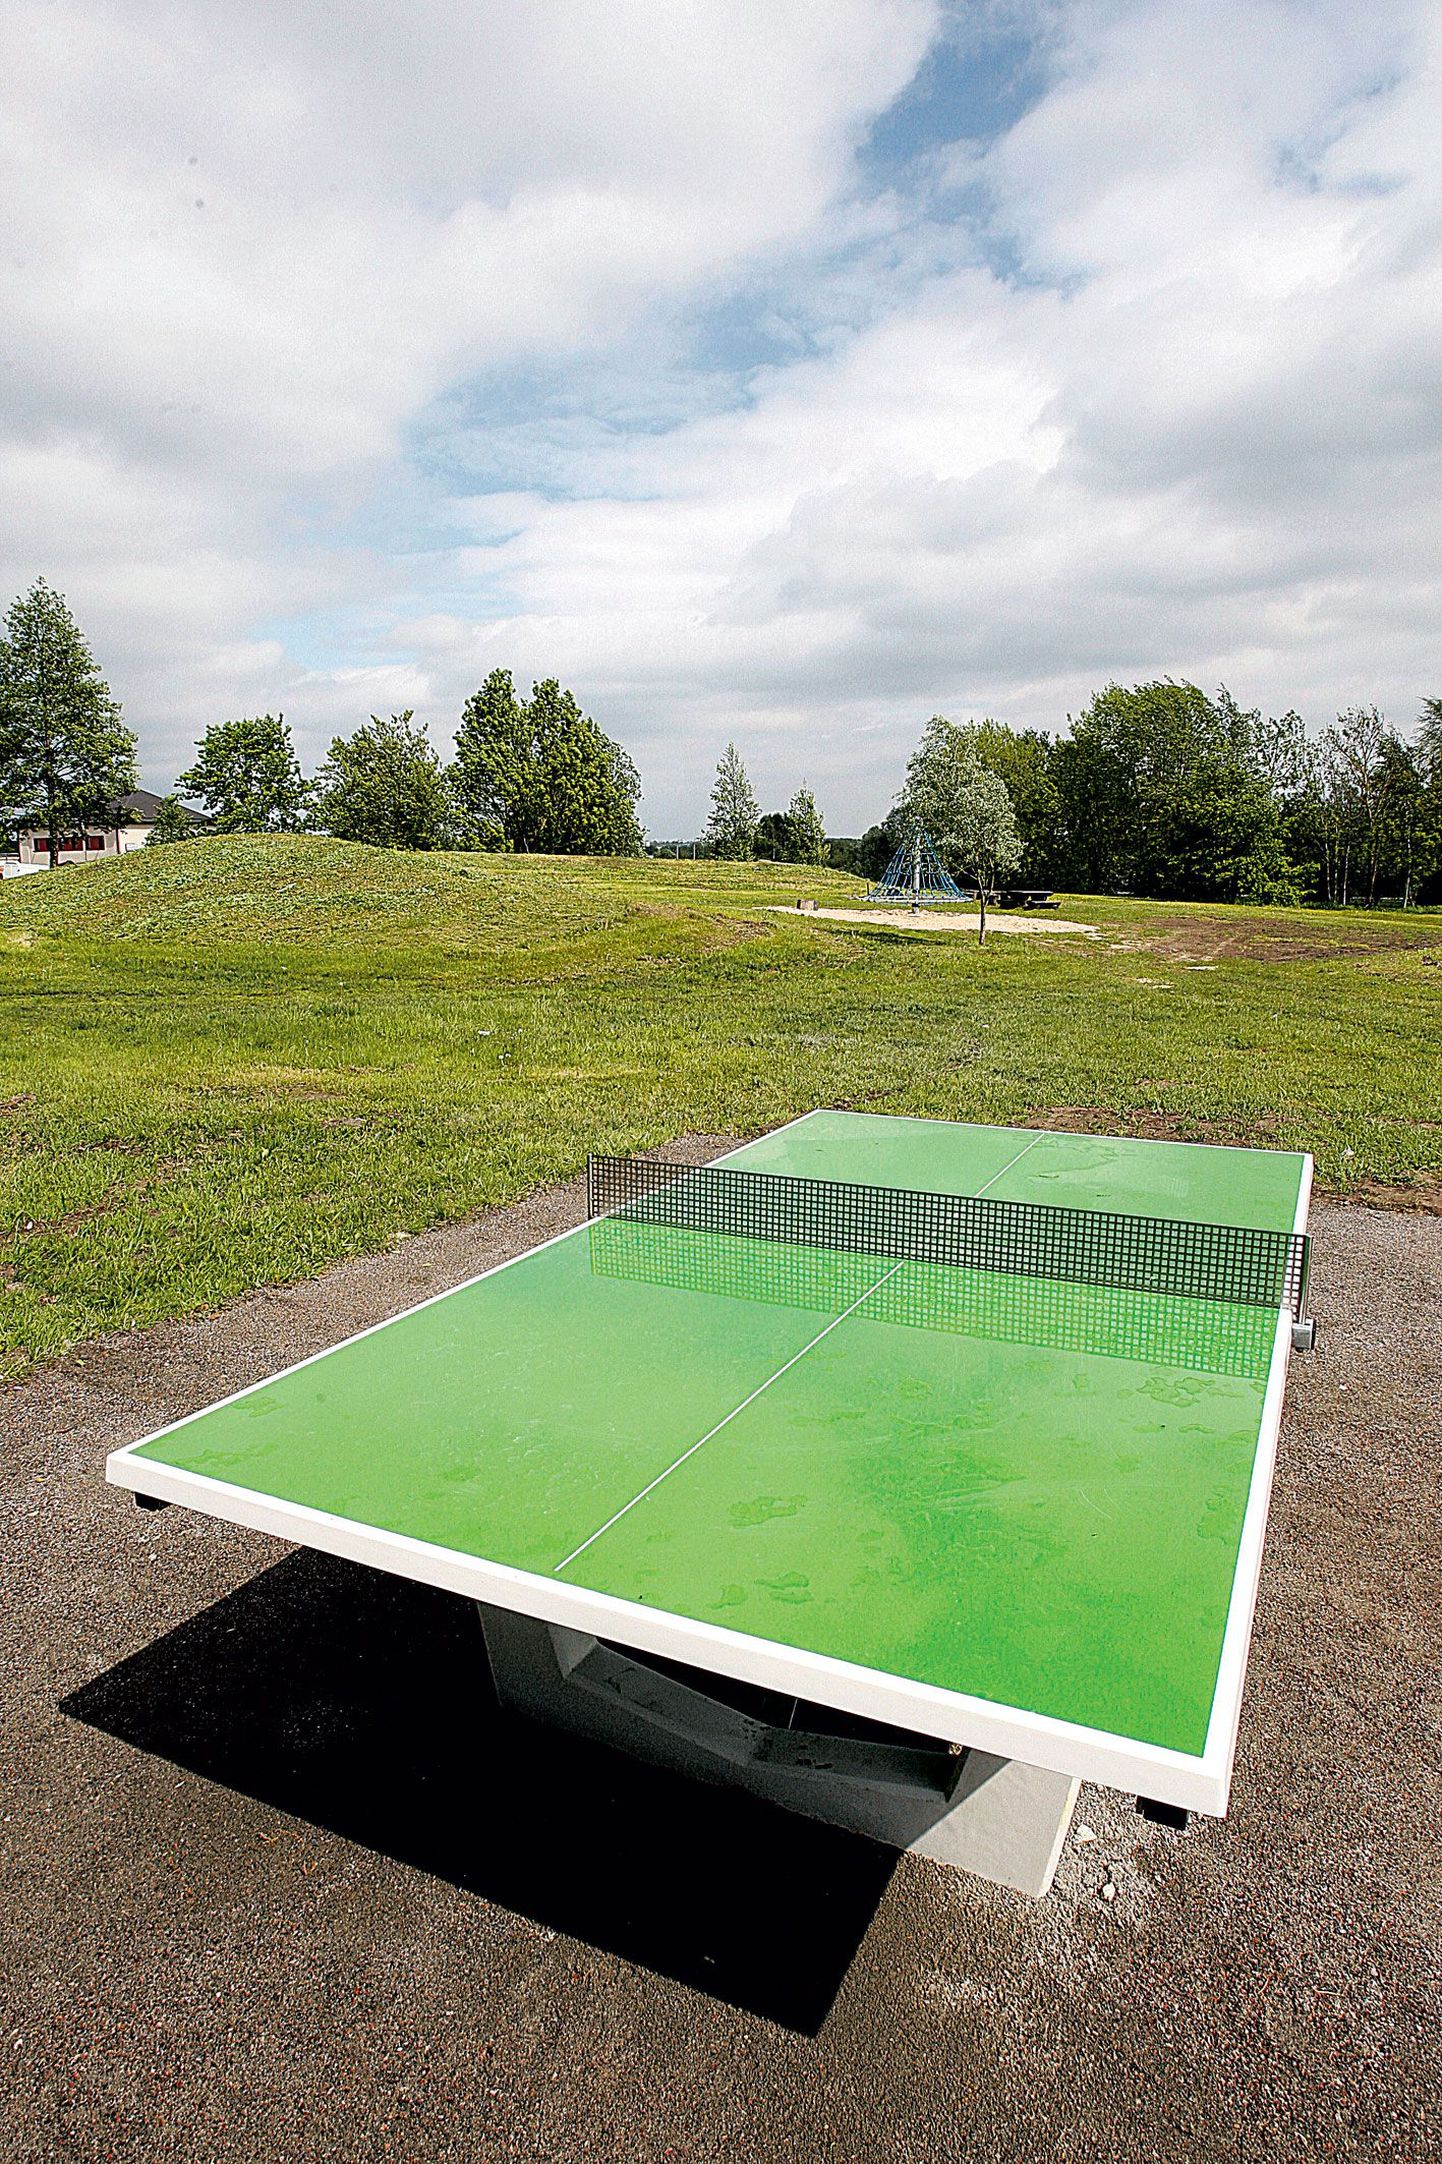 Ropka mänguväljaku moodustavad roheline lauatennise laud, sinine ronimiskarussell (taamal) ja ühe korviga palliplats.